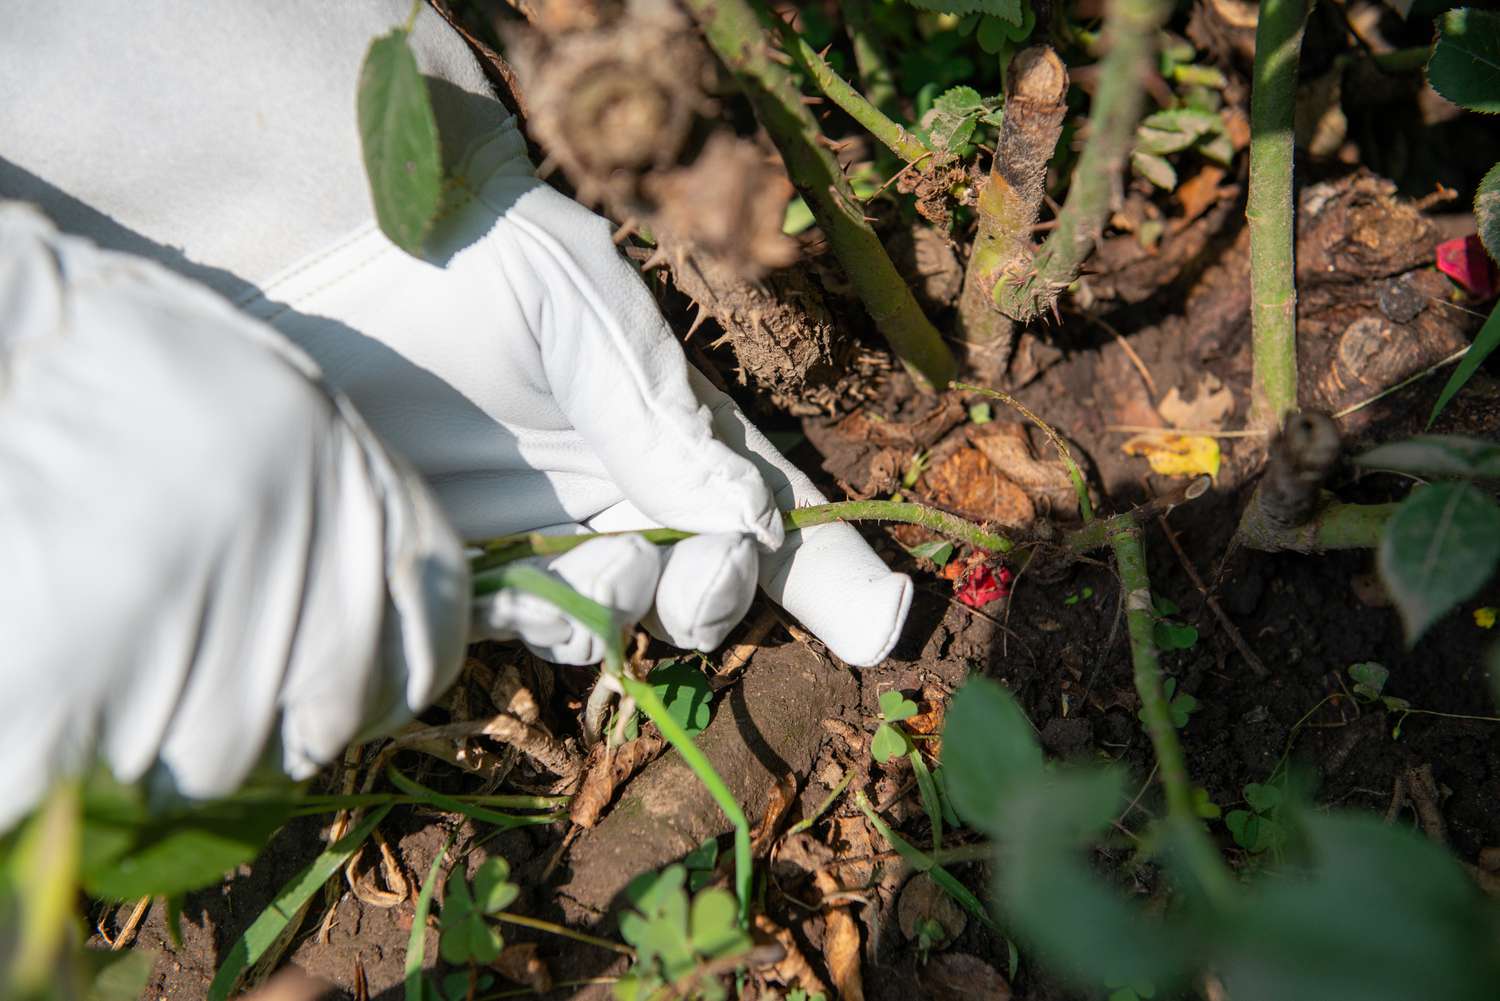 Floribunda-Rosensauger von Hand am Fuß des Strauchs herausgerissen